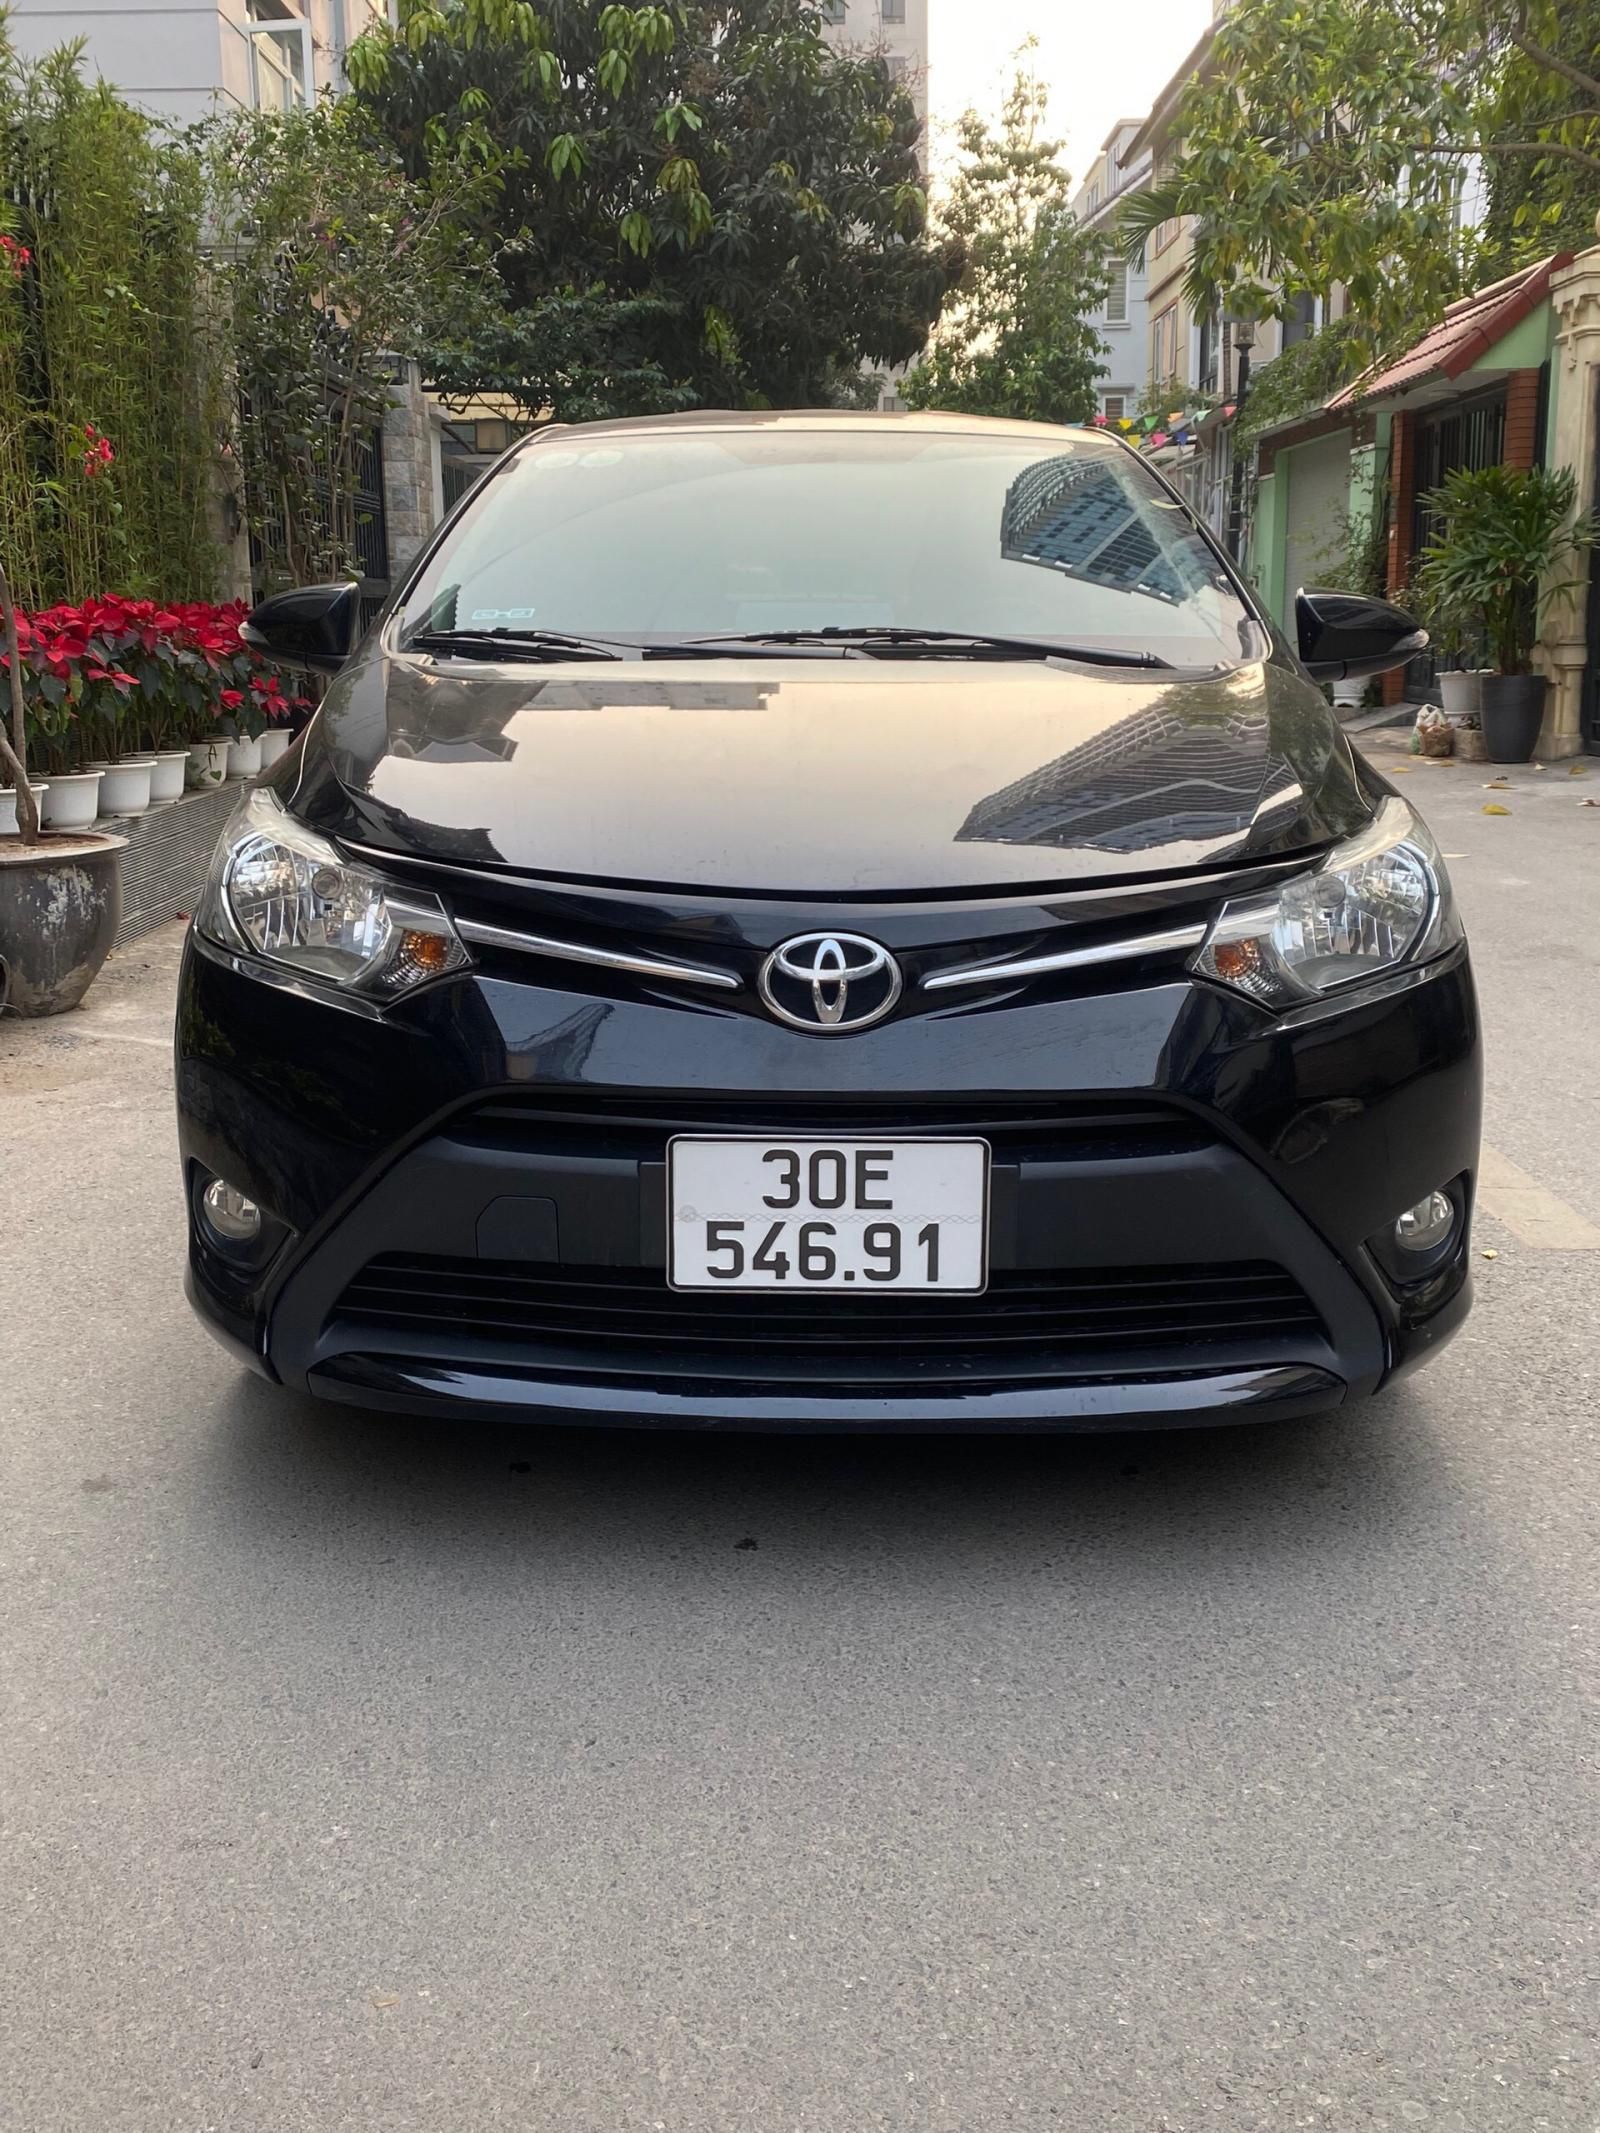 Mua bán xe Toyota Vios 2017 màu bạc 032023  Bonbanhcom